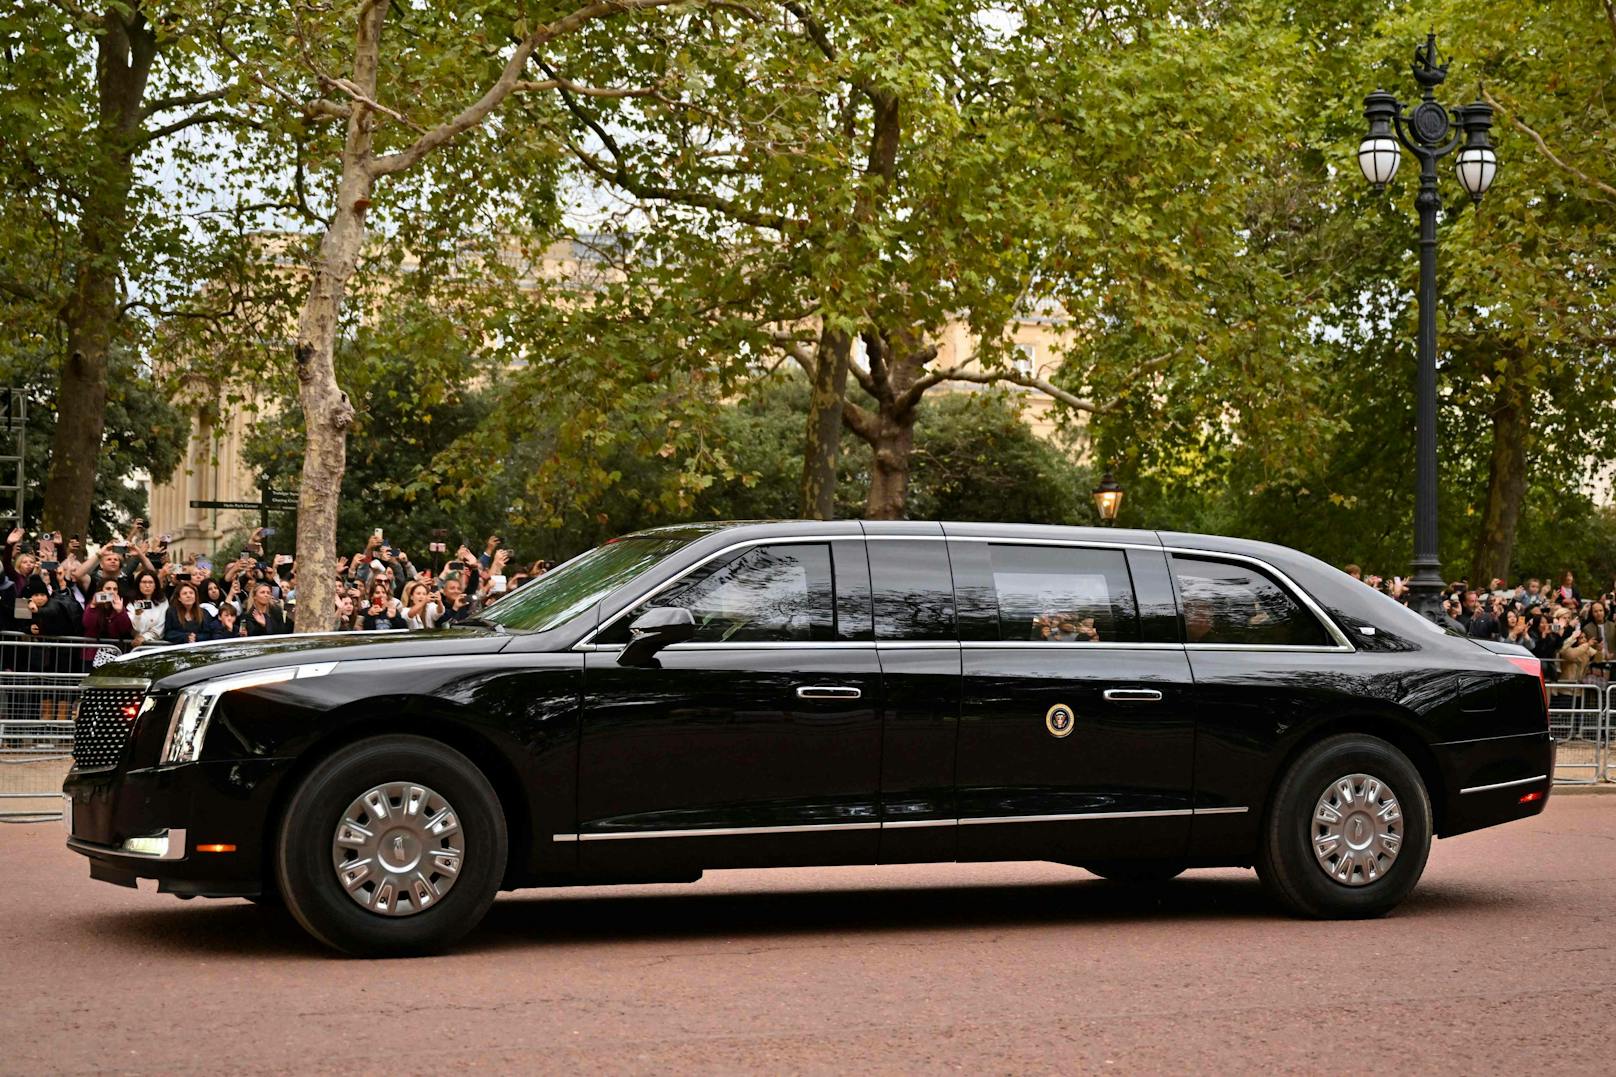 US-Präsident Joe Biden sitzt in seinem Auto "The Beast", als es am Sonntag den 18. September vor dem Staatsbegräbnis von Königin Elizabeth II. am Buckingham Palace vorbeifährt.